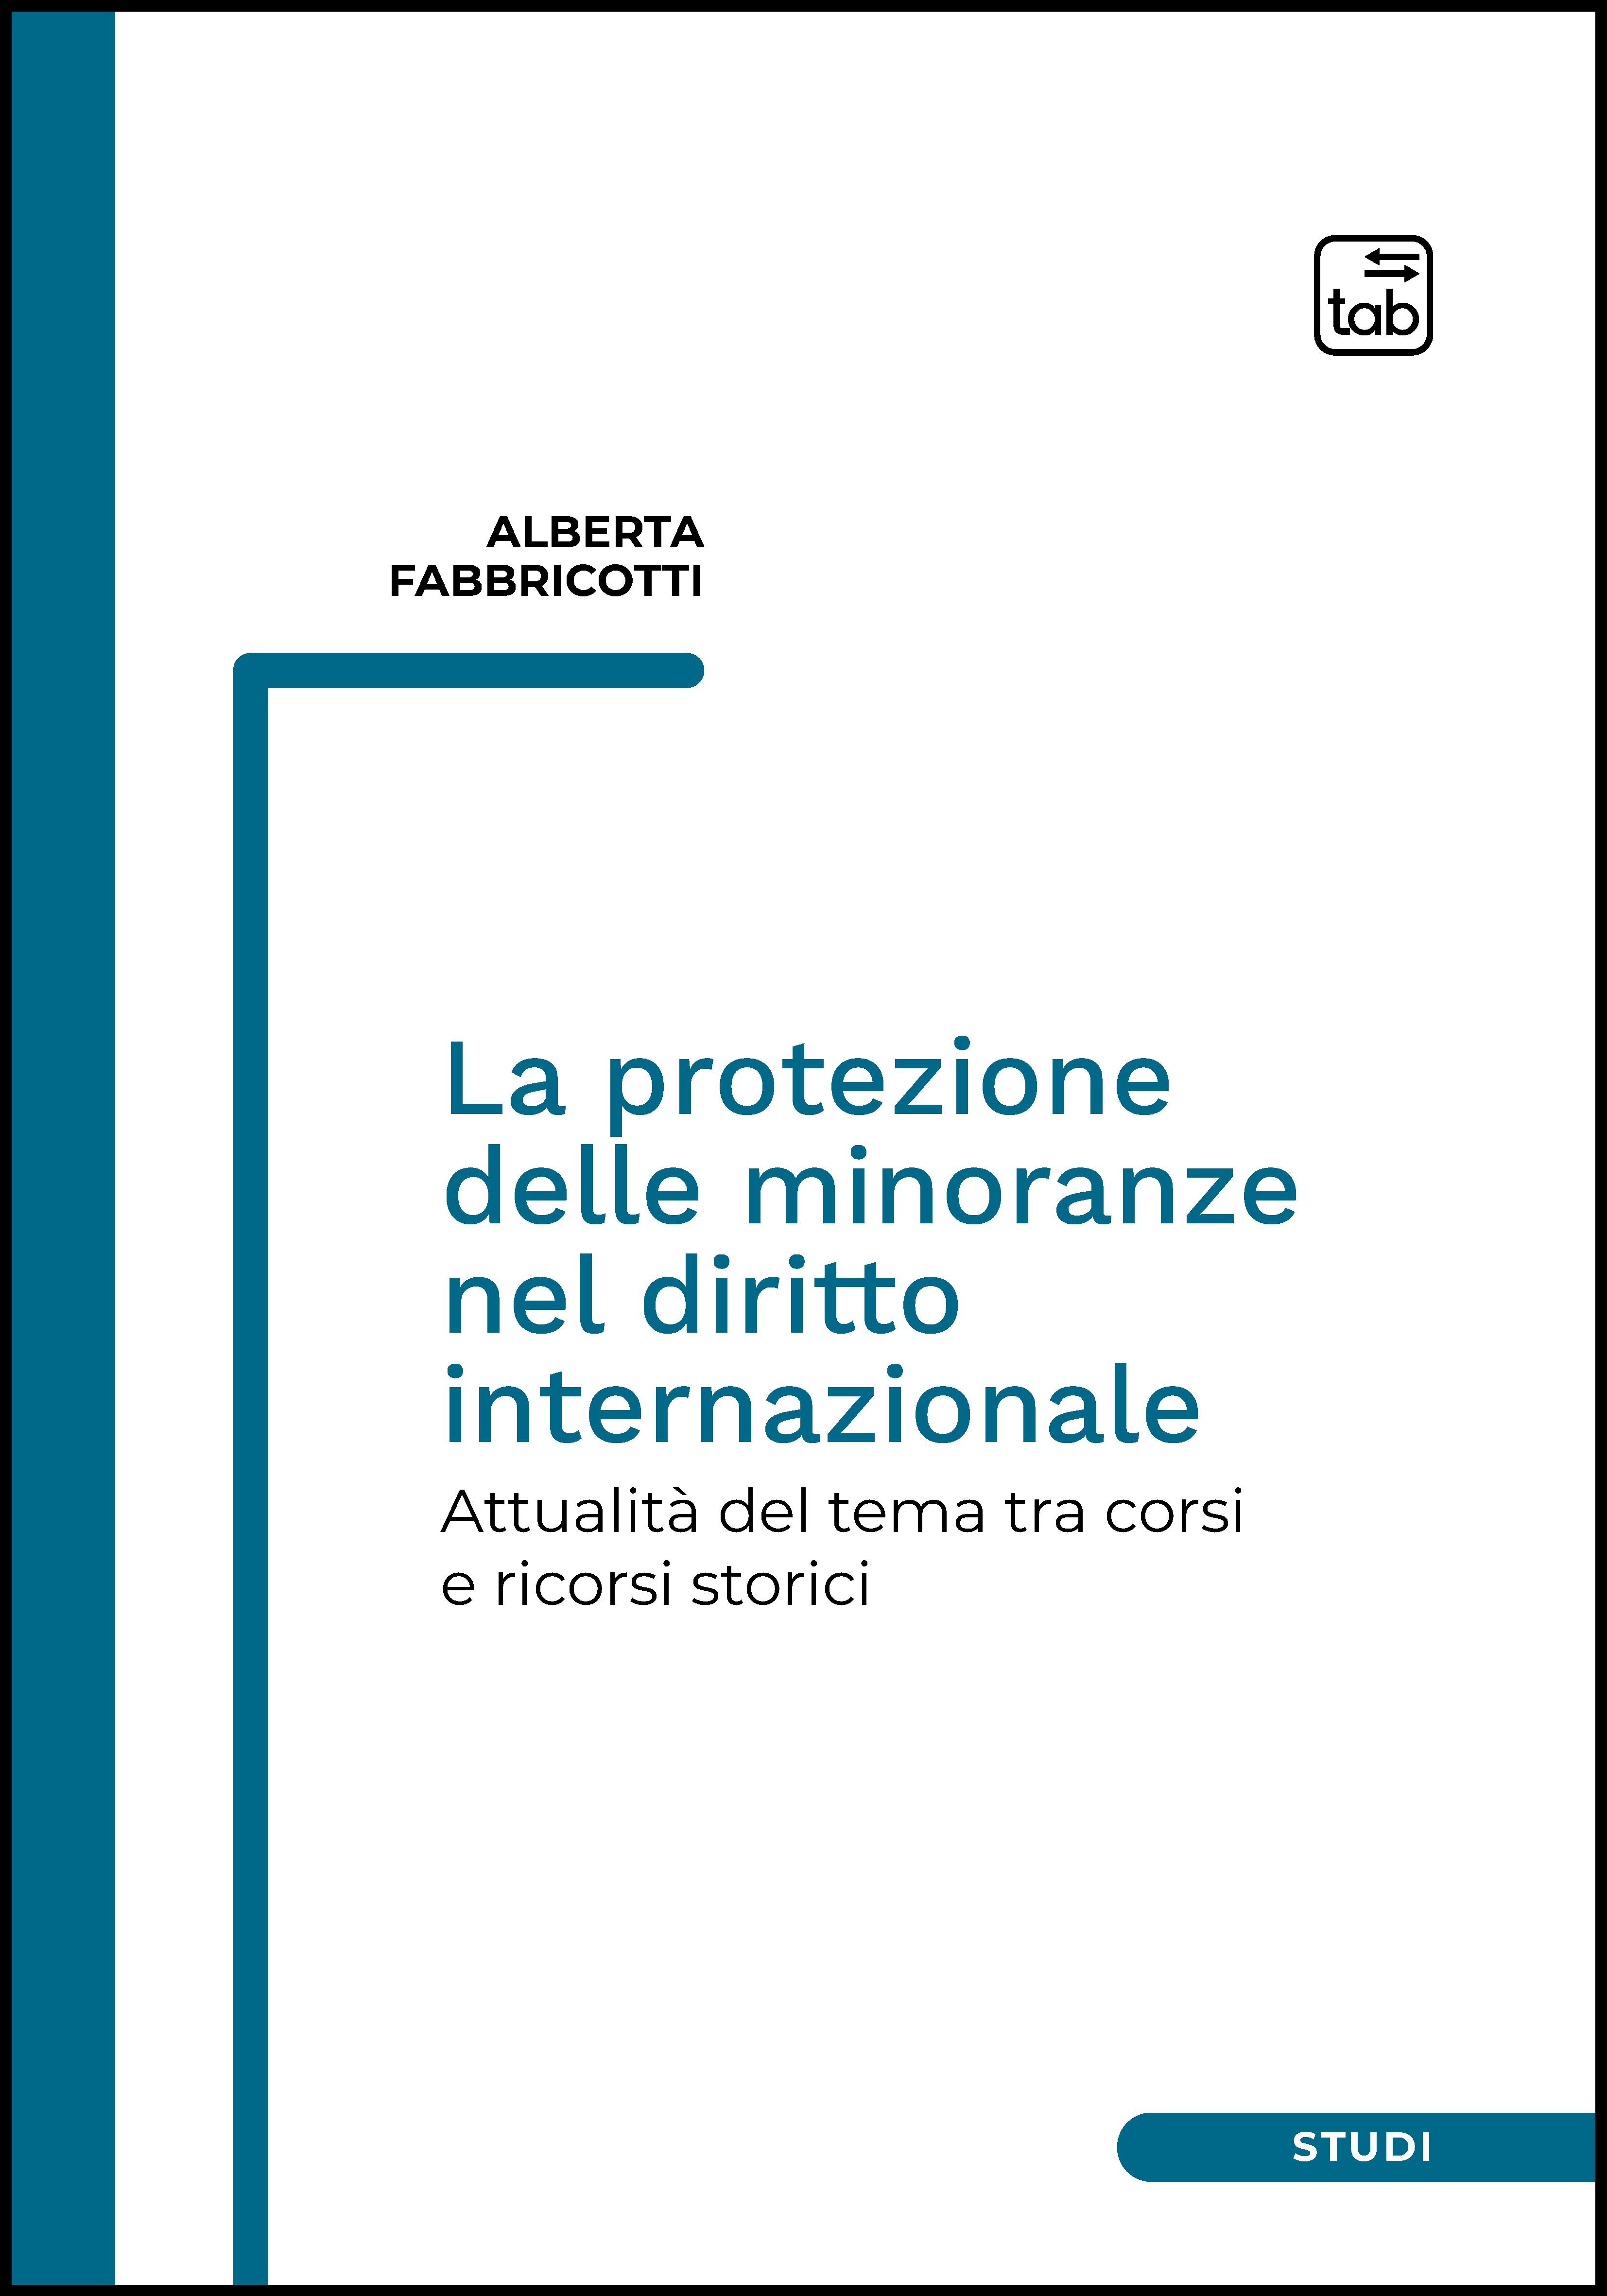 La protezione delle minoranze nel diritto internazionale